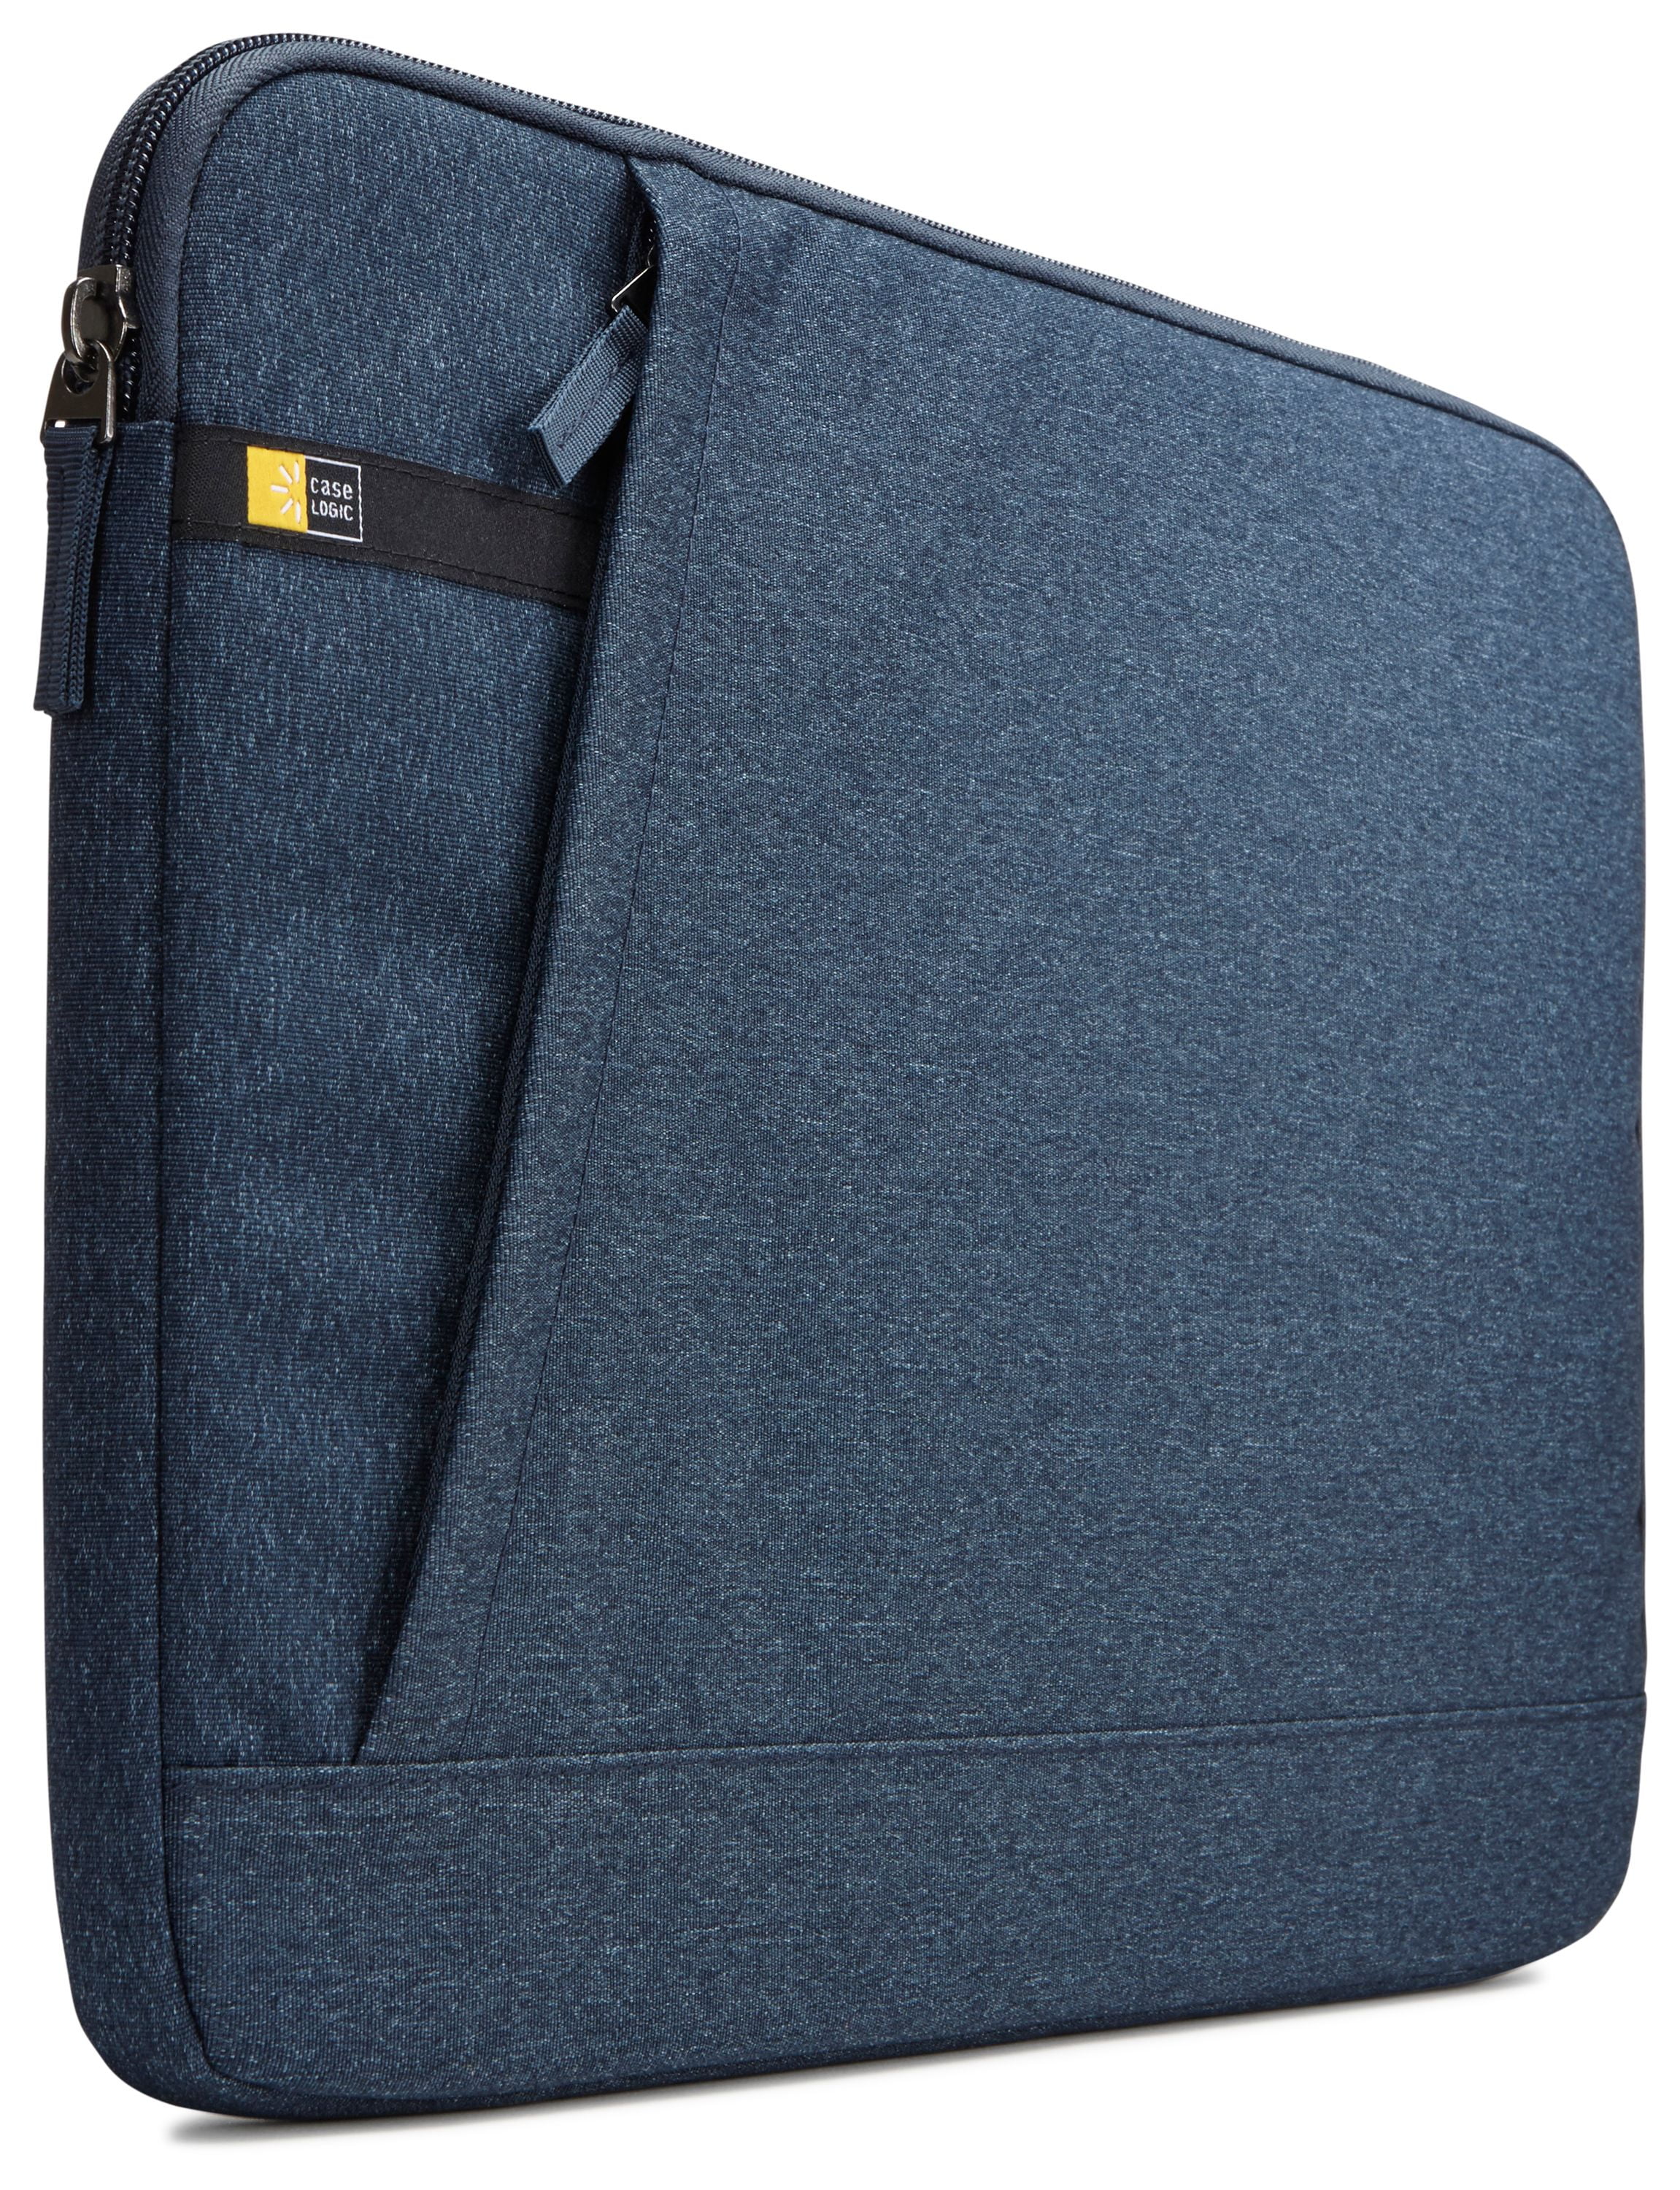 Case Logic WUXS115 Huxton 15.6" Laptop Sleeve, Blue